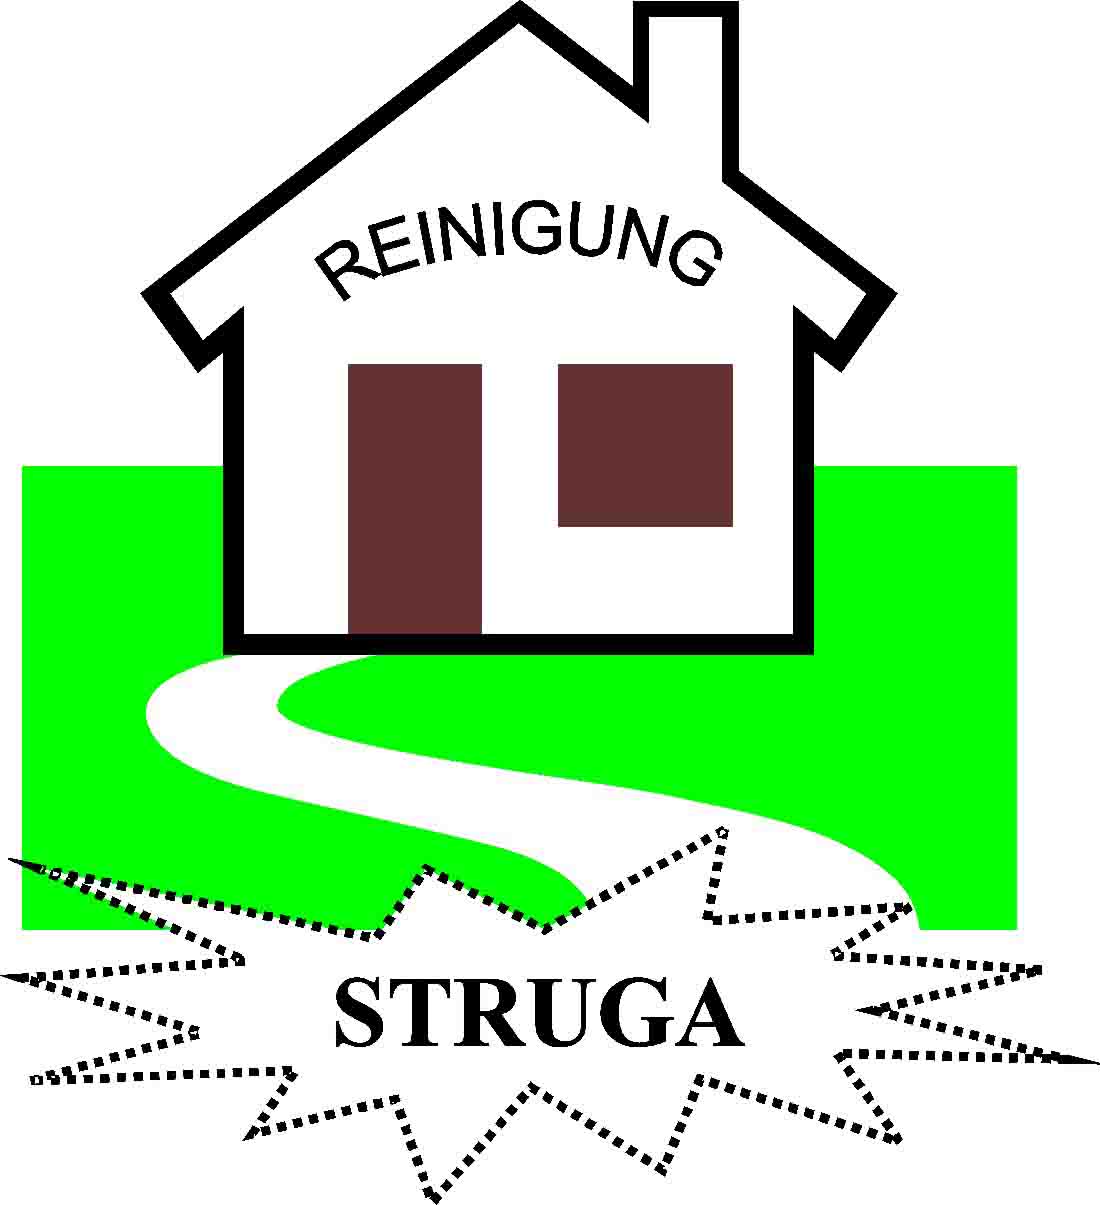 www.struga-reinigung.ch  Struga Reinigungen, 8400Winterthur.